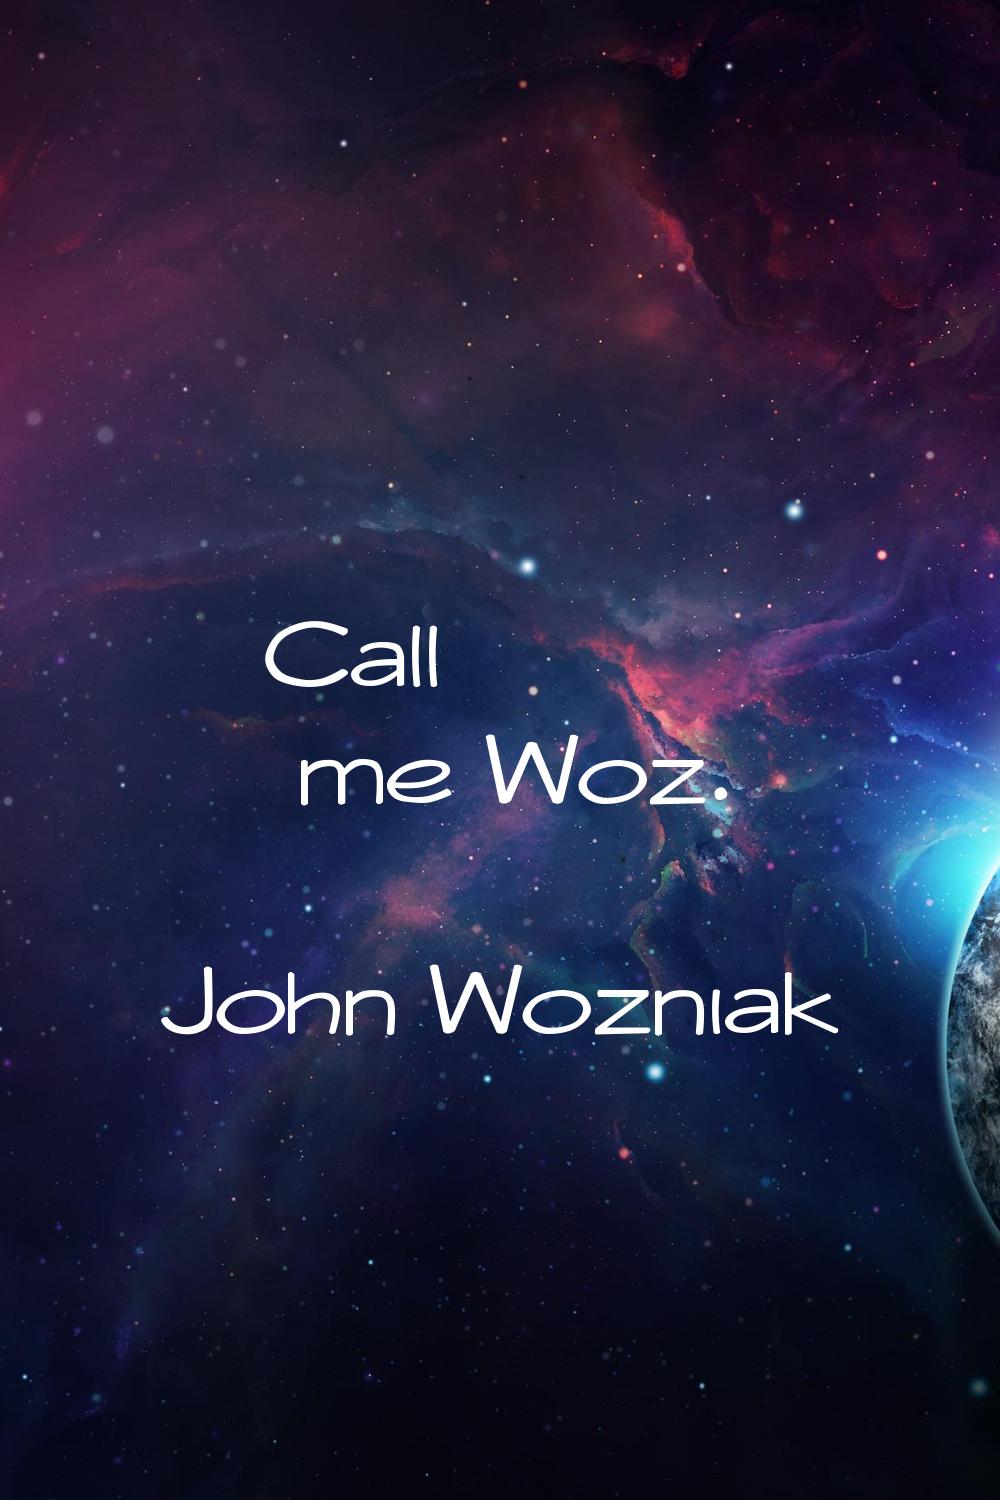 Call me Woz.